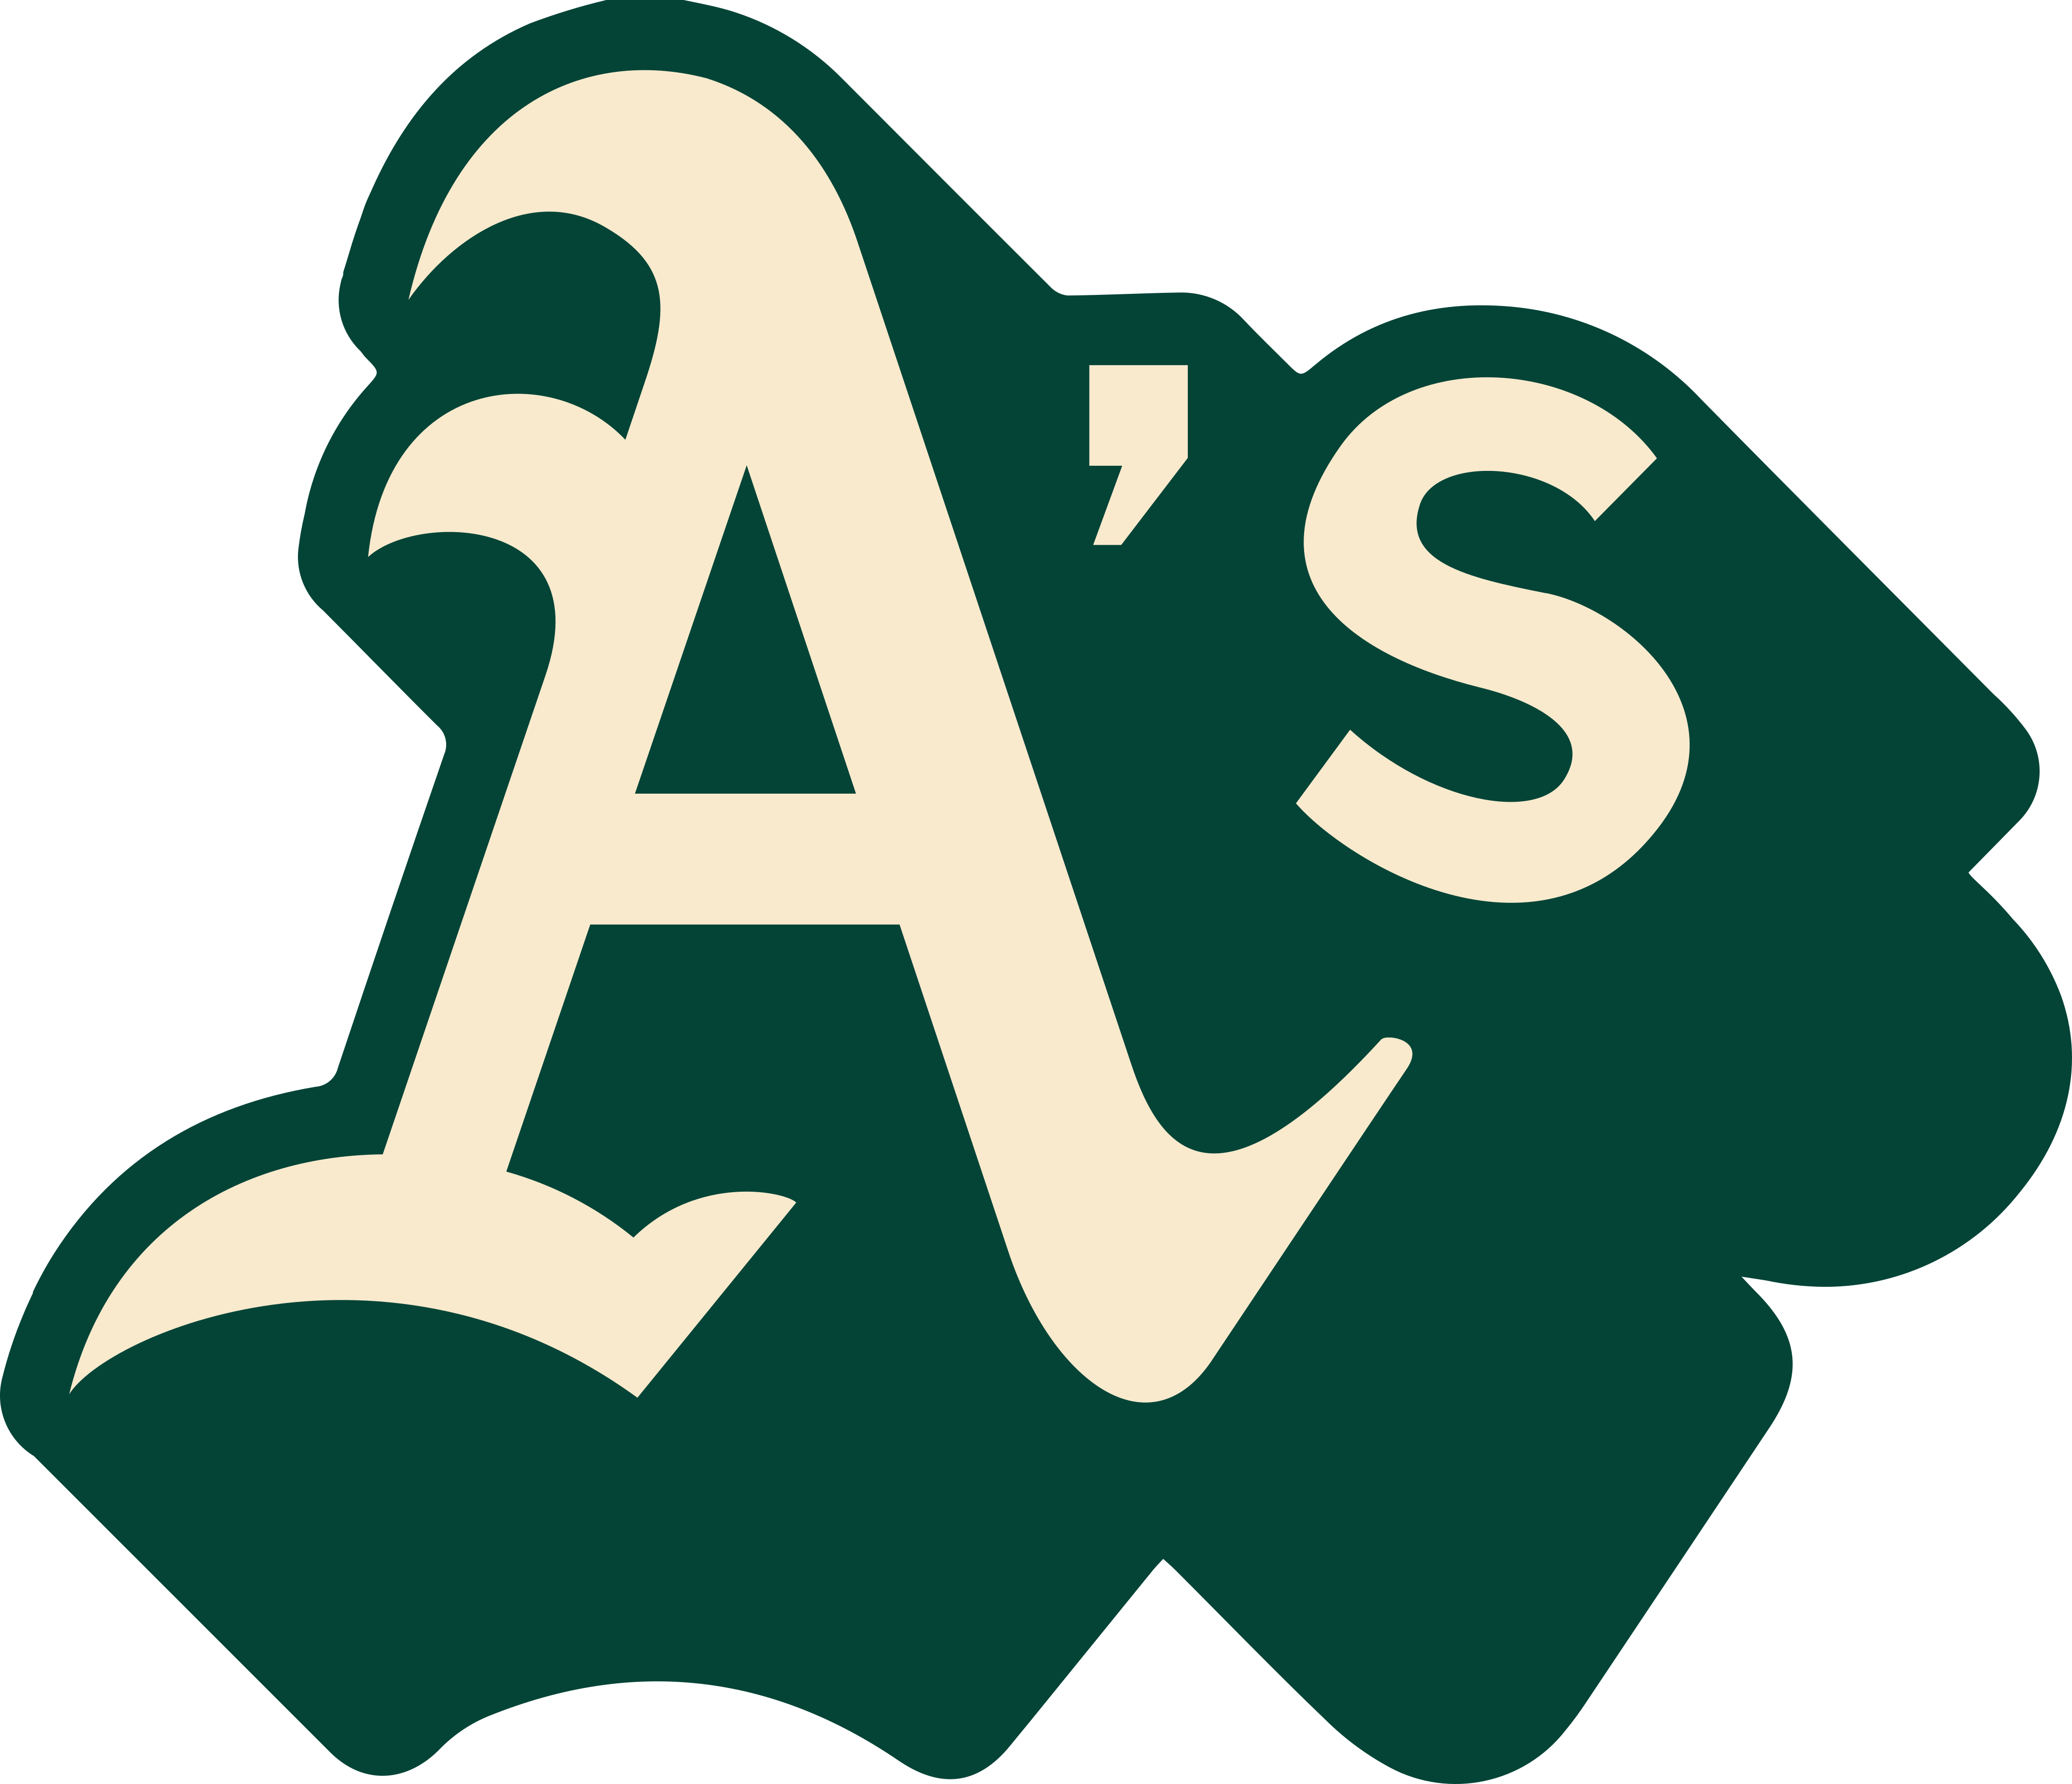 oakland athletics logo - Oakland Athletics Logo